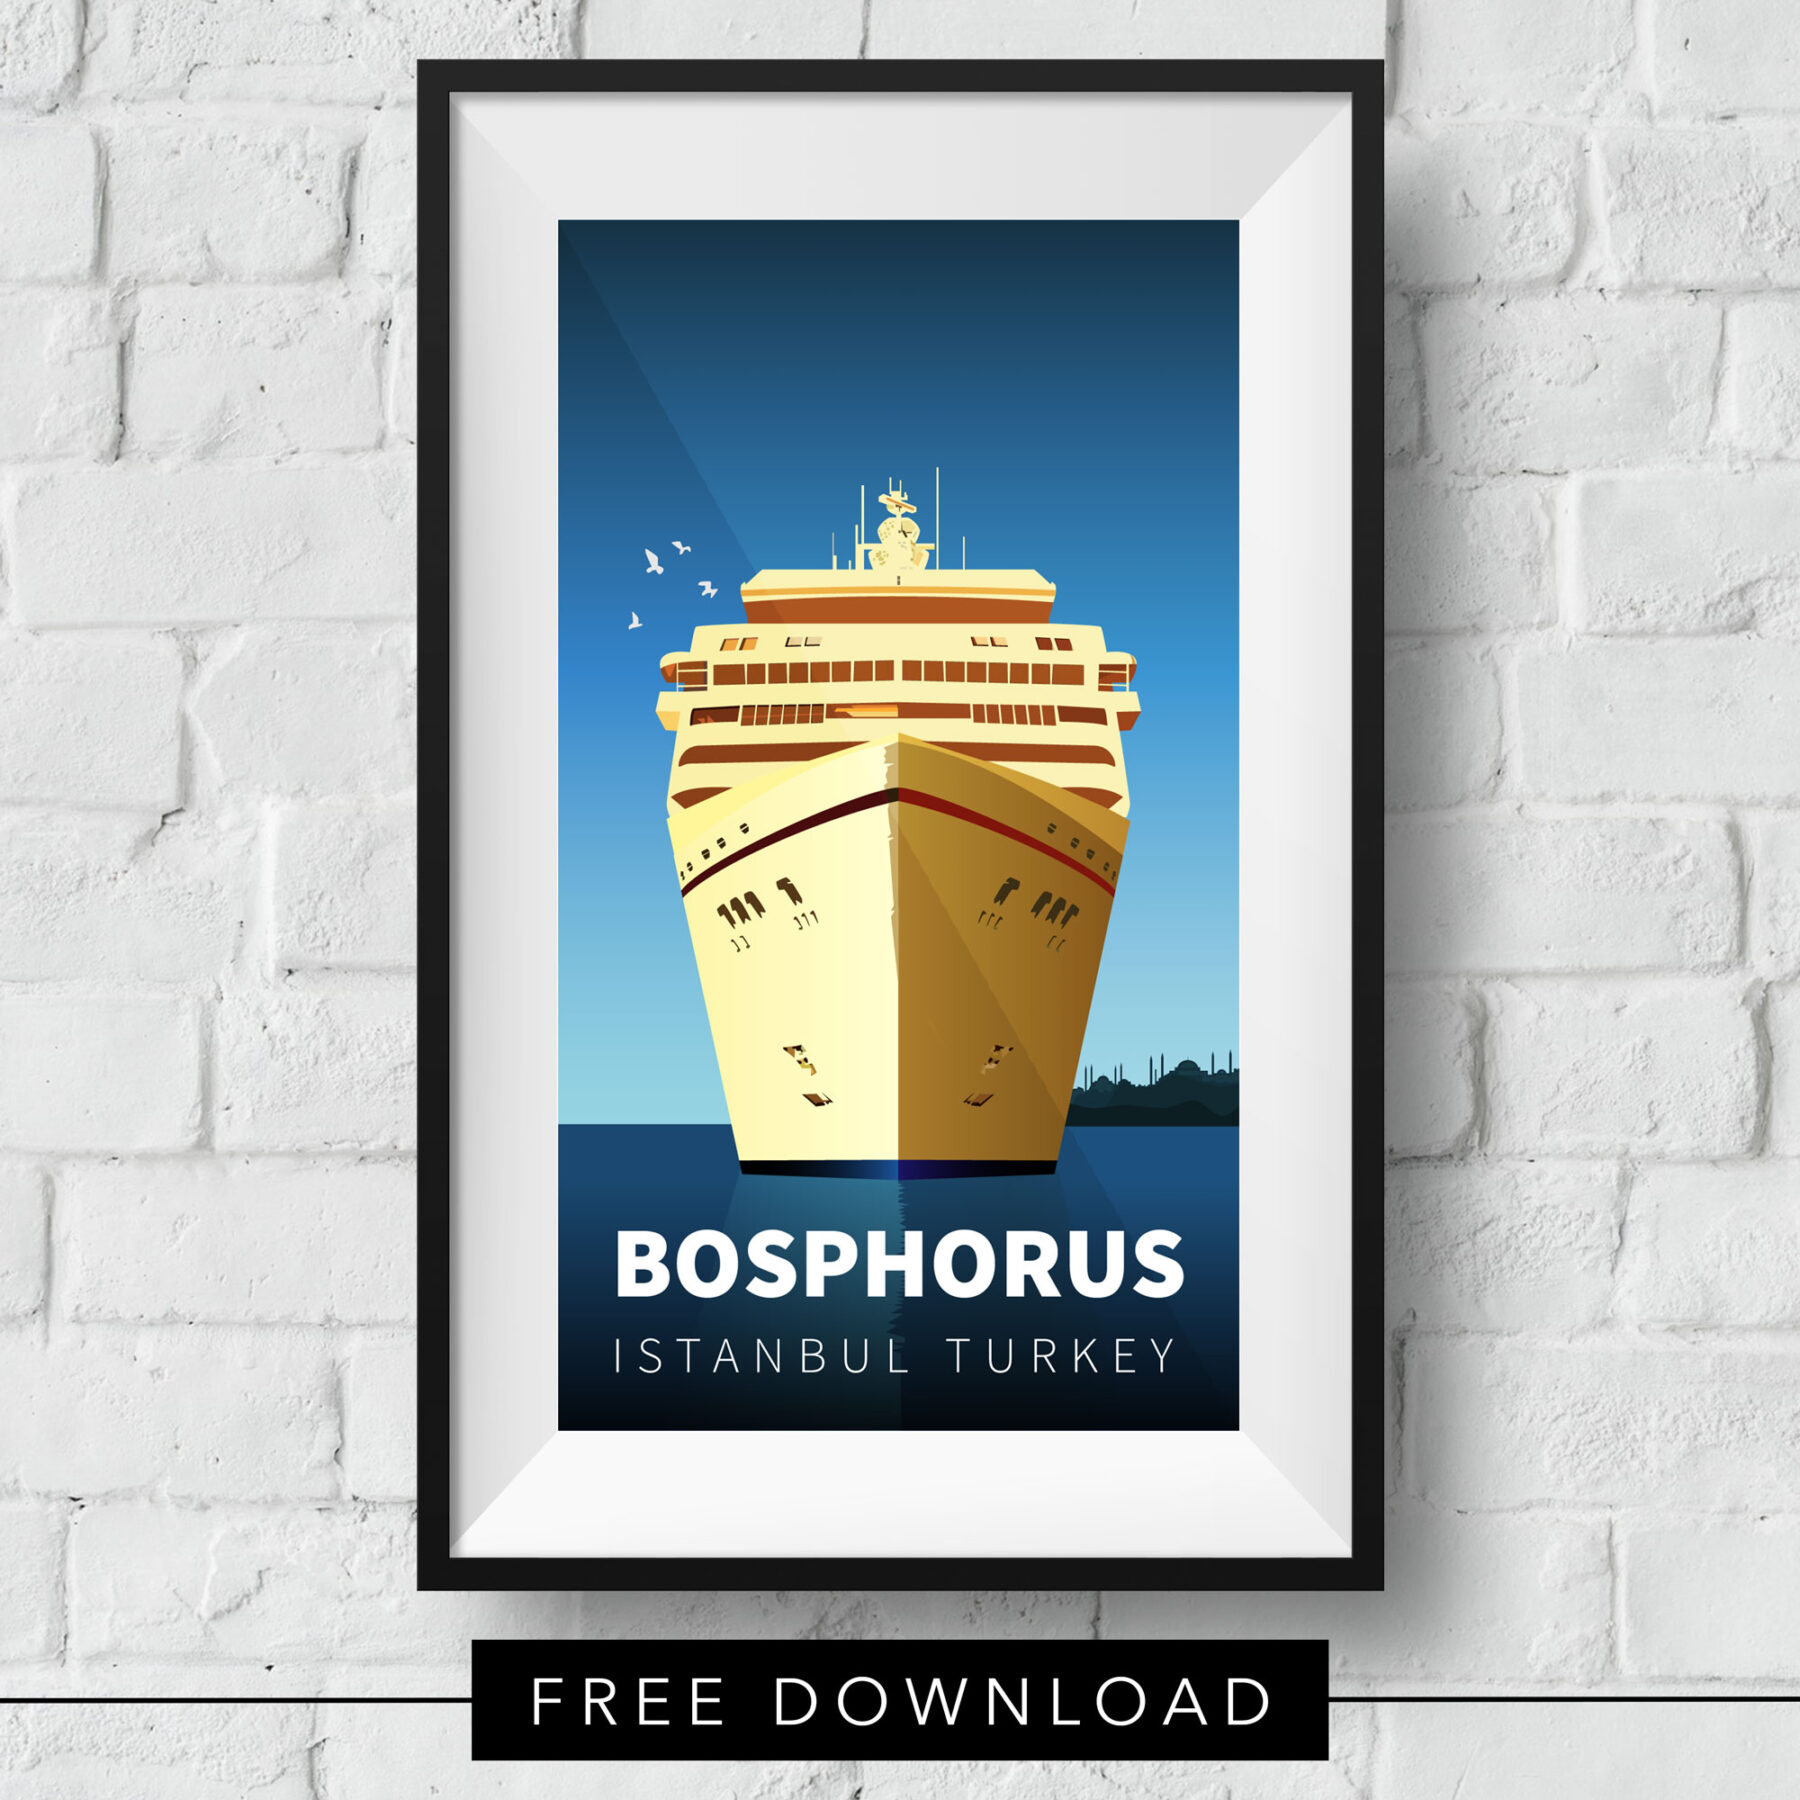 bosphorus-crusie-free-download